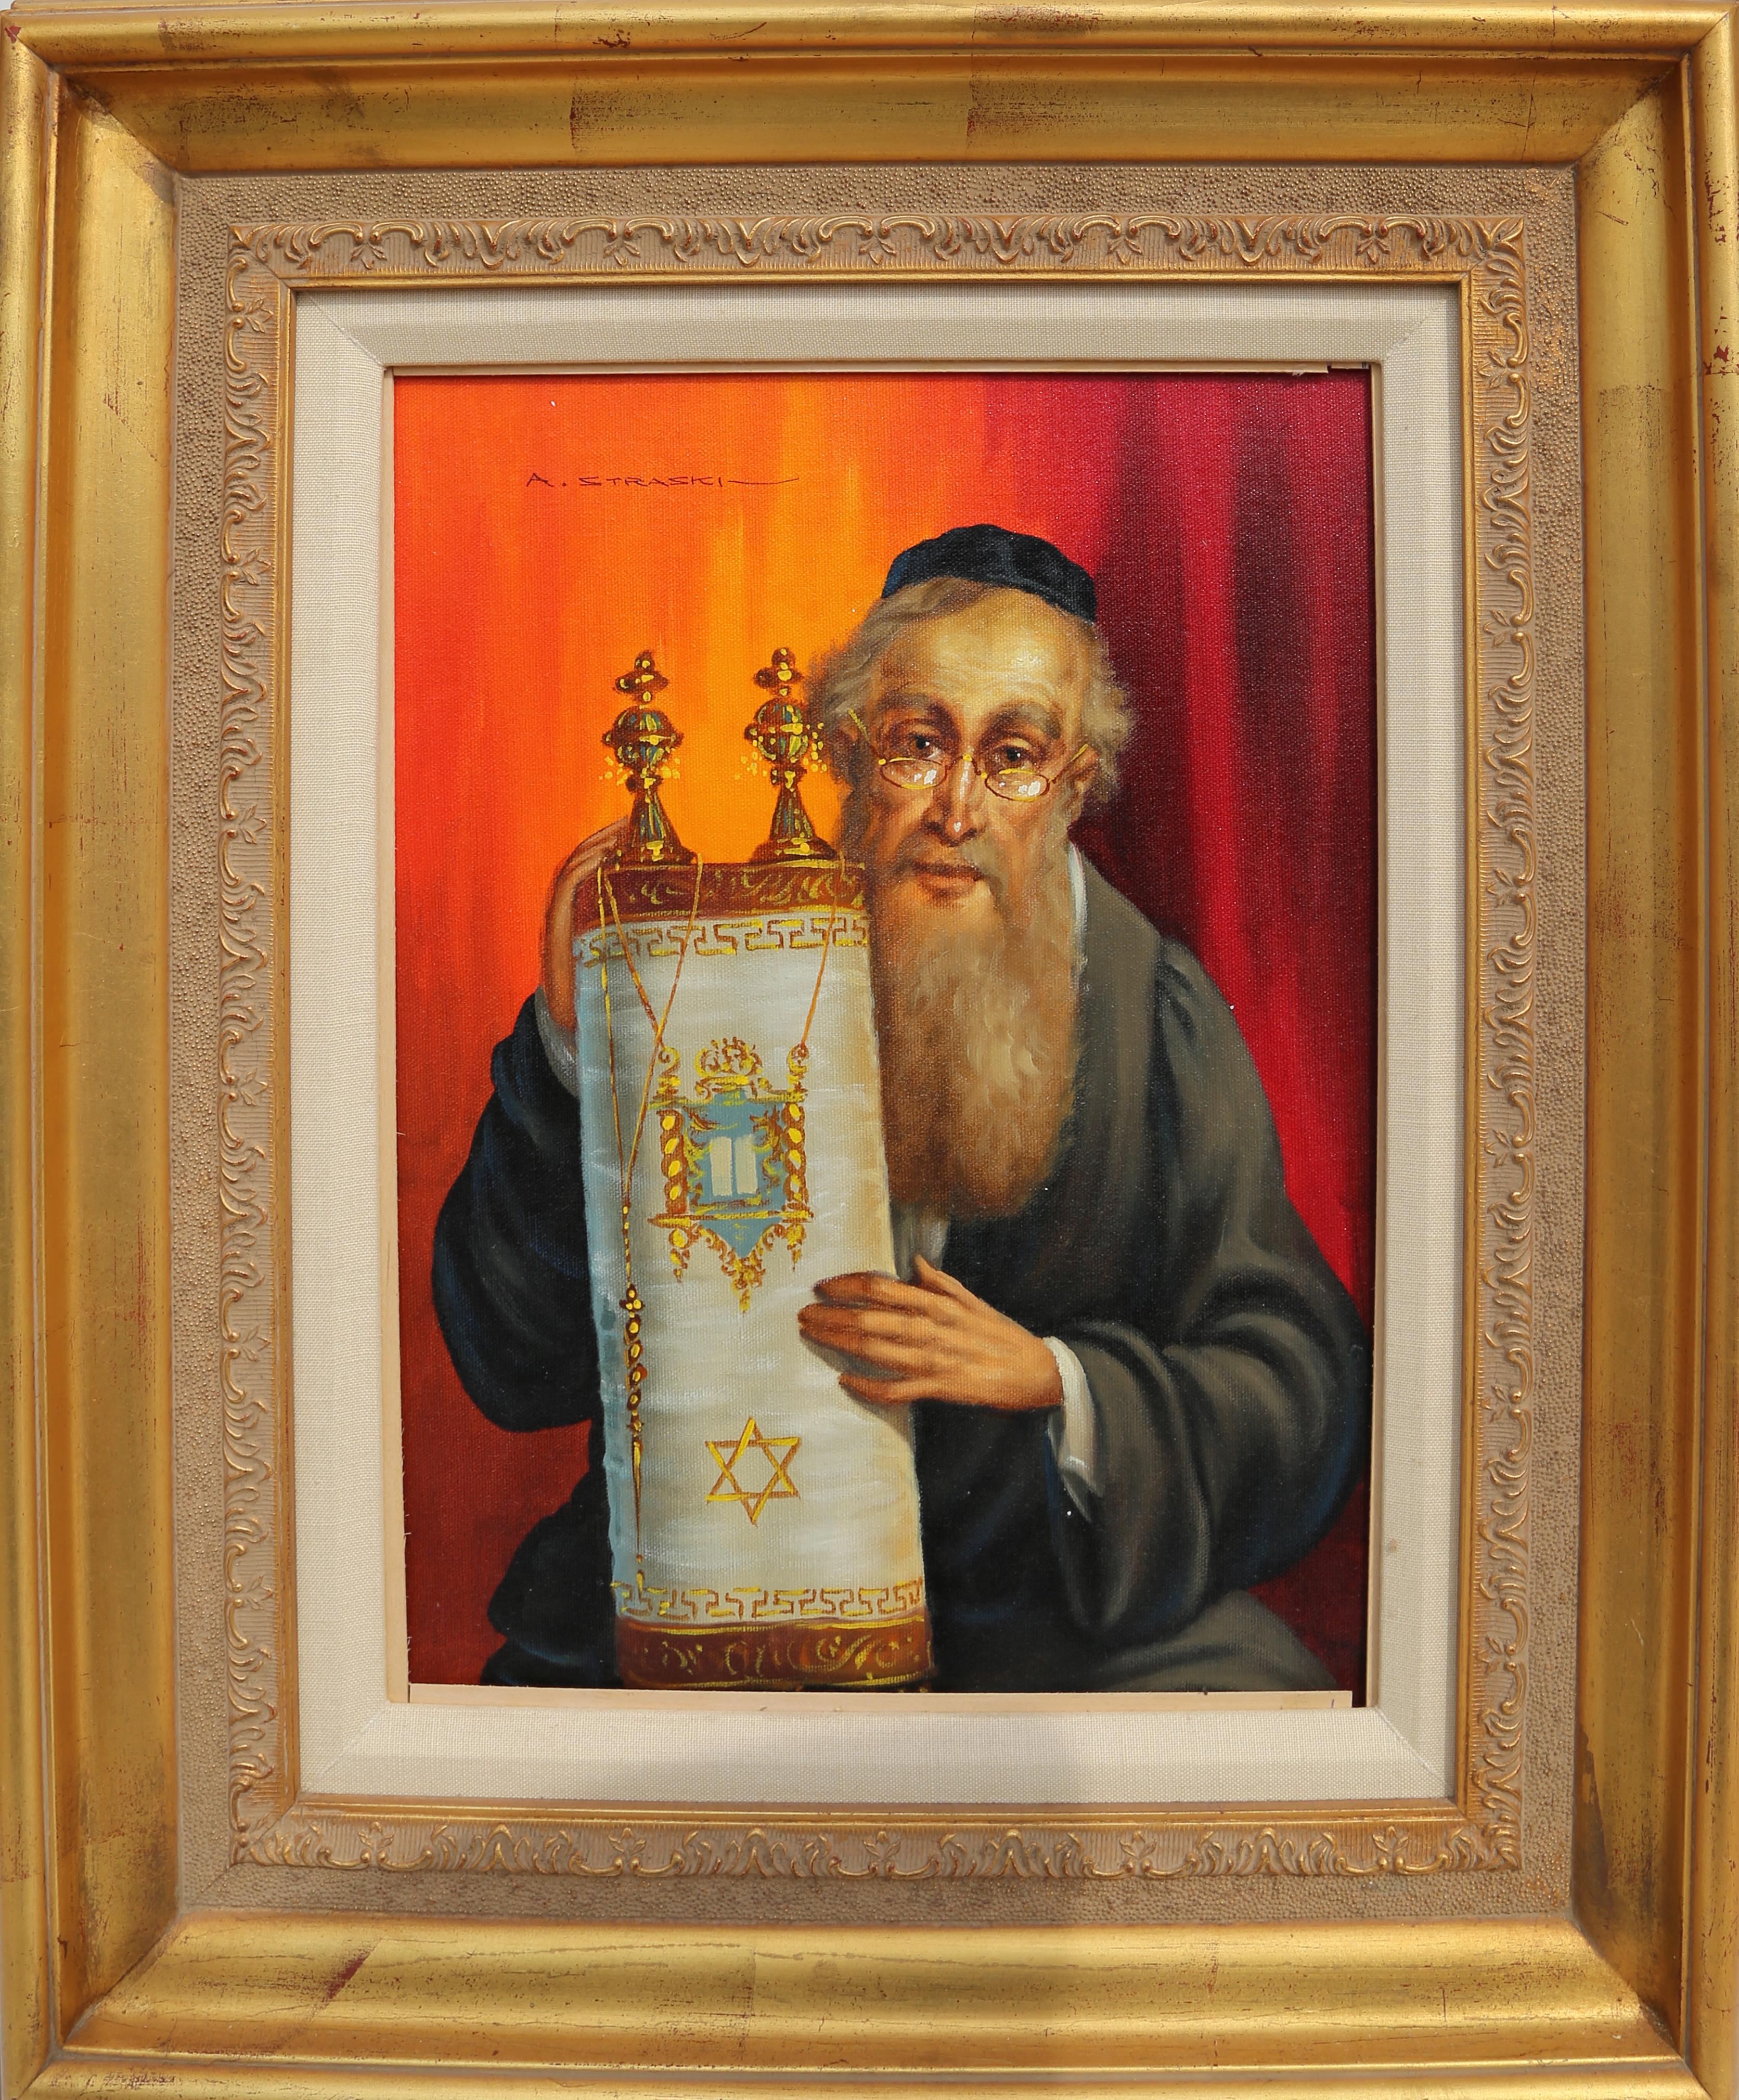 Künstler: Abraham Straski, Pole (1903 - 1987)
Titel: Rabbiner und Tora
Jahr: ca. 1957
Medium: Öl auf Leinwand, signiert v.l.n.r.
Bildgröße: 16 x 12 Zoll
Rahmengröße: 26 x 20 Zoll
